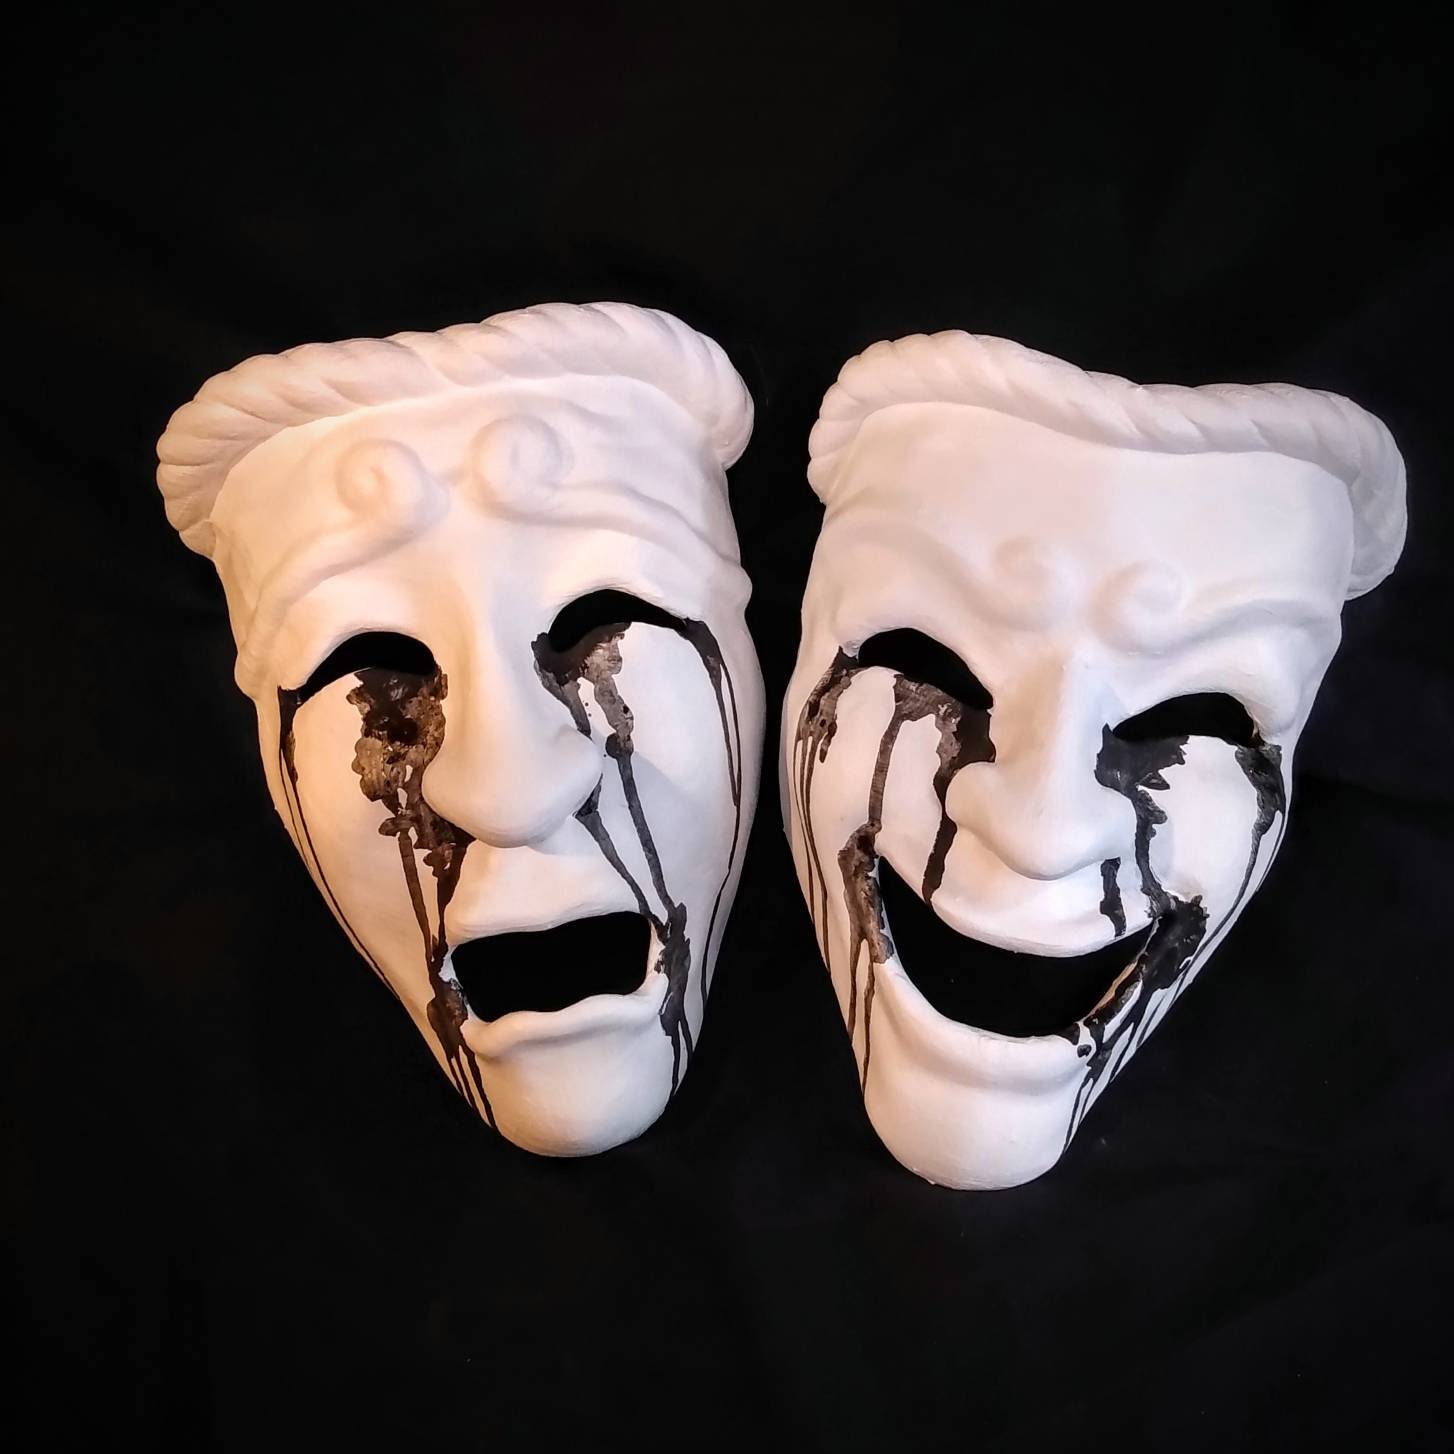 Greek Tragedy Mask / Theater Mask 